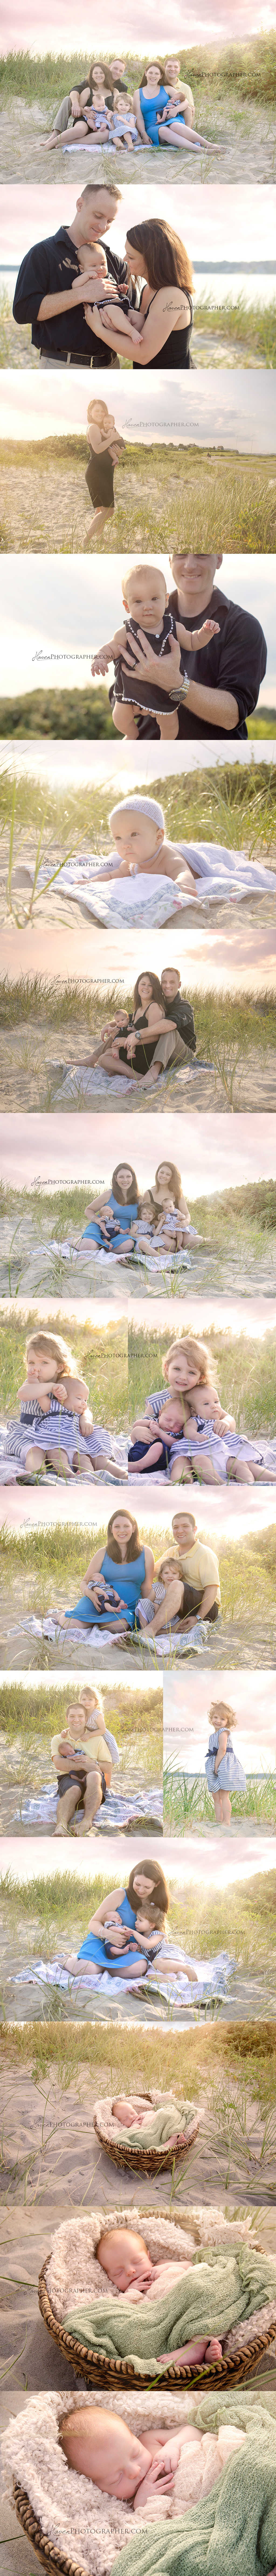 beach, family photos, beach photography, Rhode Island photographer